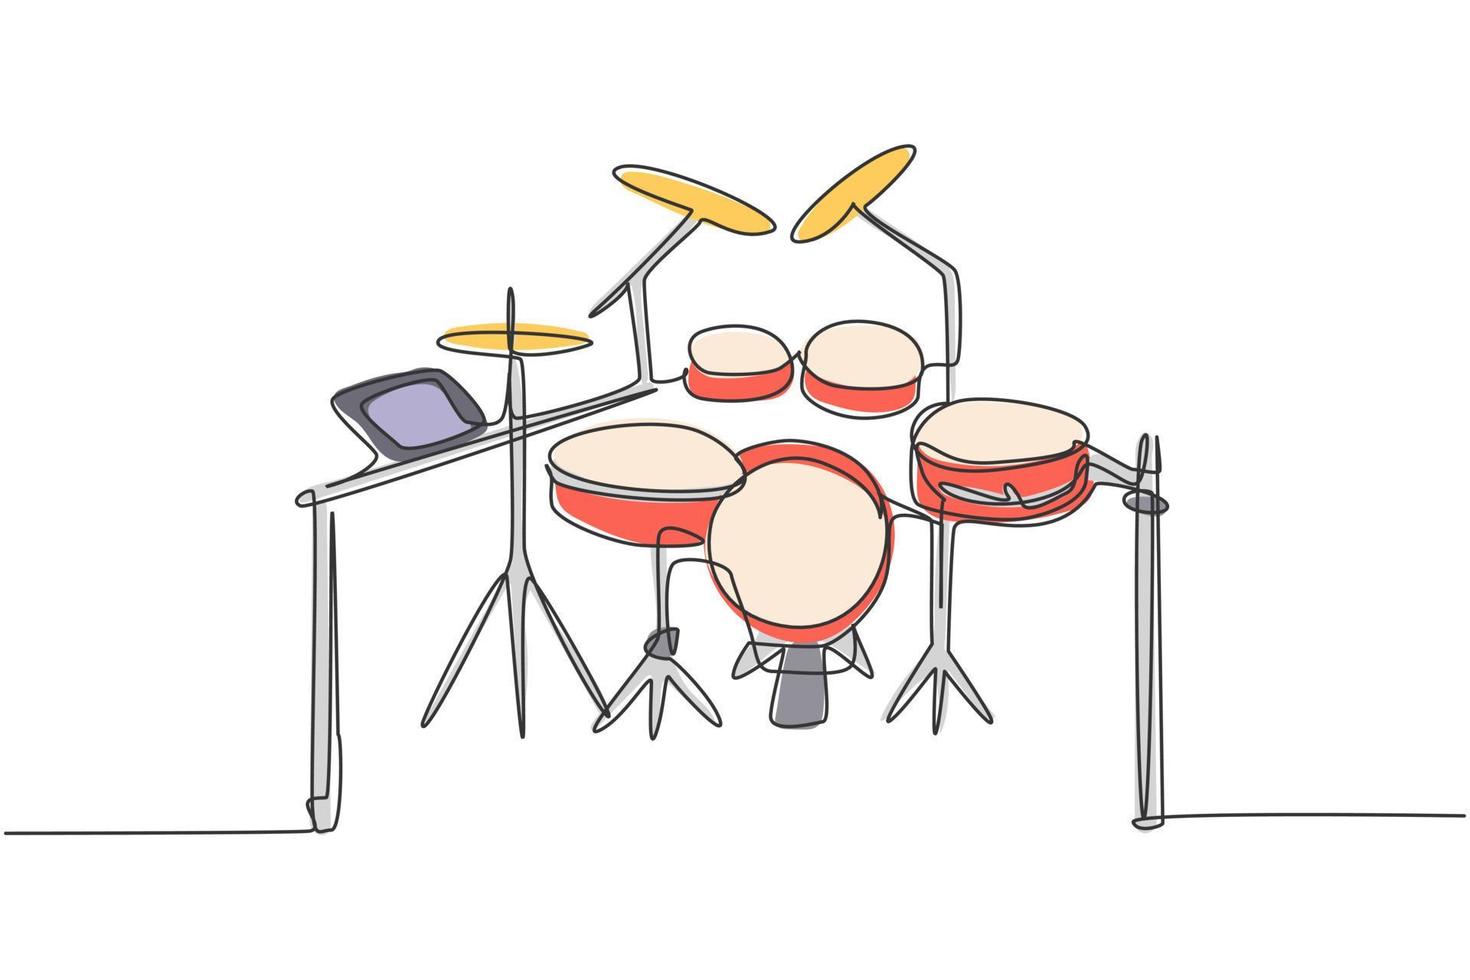 Kontinuierliche einzeilige Zeichnung des elektronischen Drum-Band-Sets. modernes elektrisches digitales Percussion-Musikinstrumenten-Konzept eine Linie zeichnen Design-Grafik-Vektor-Illustration vektor